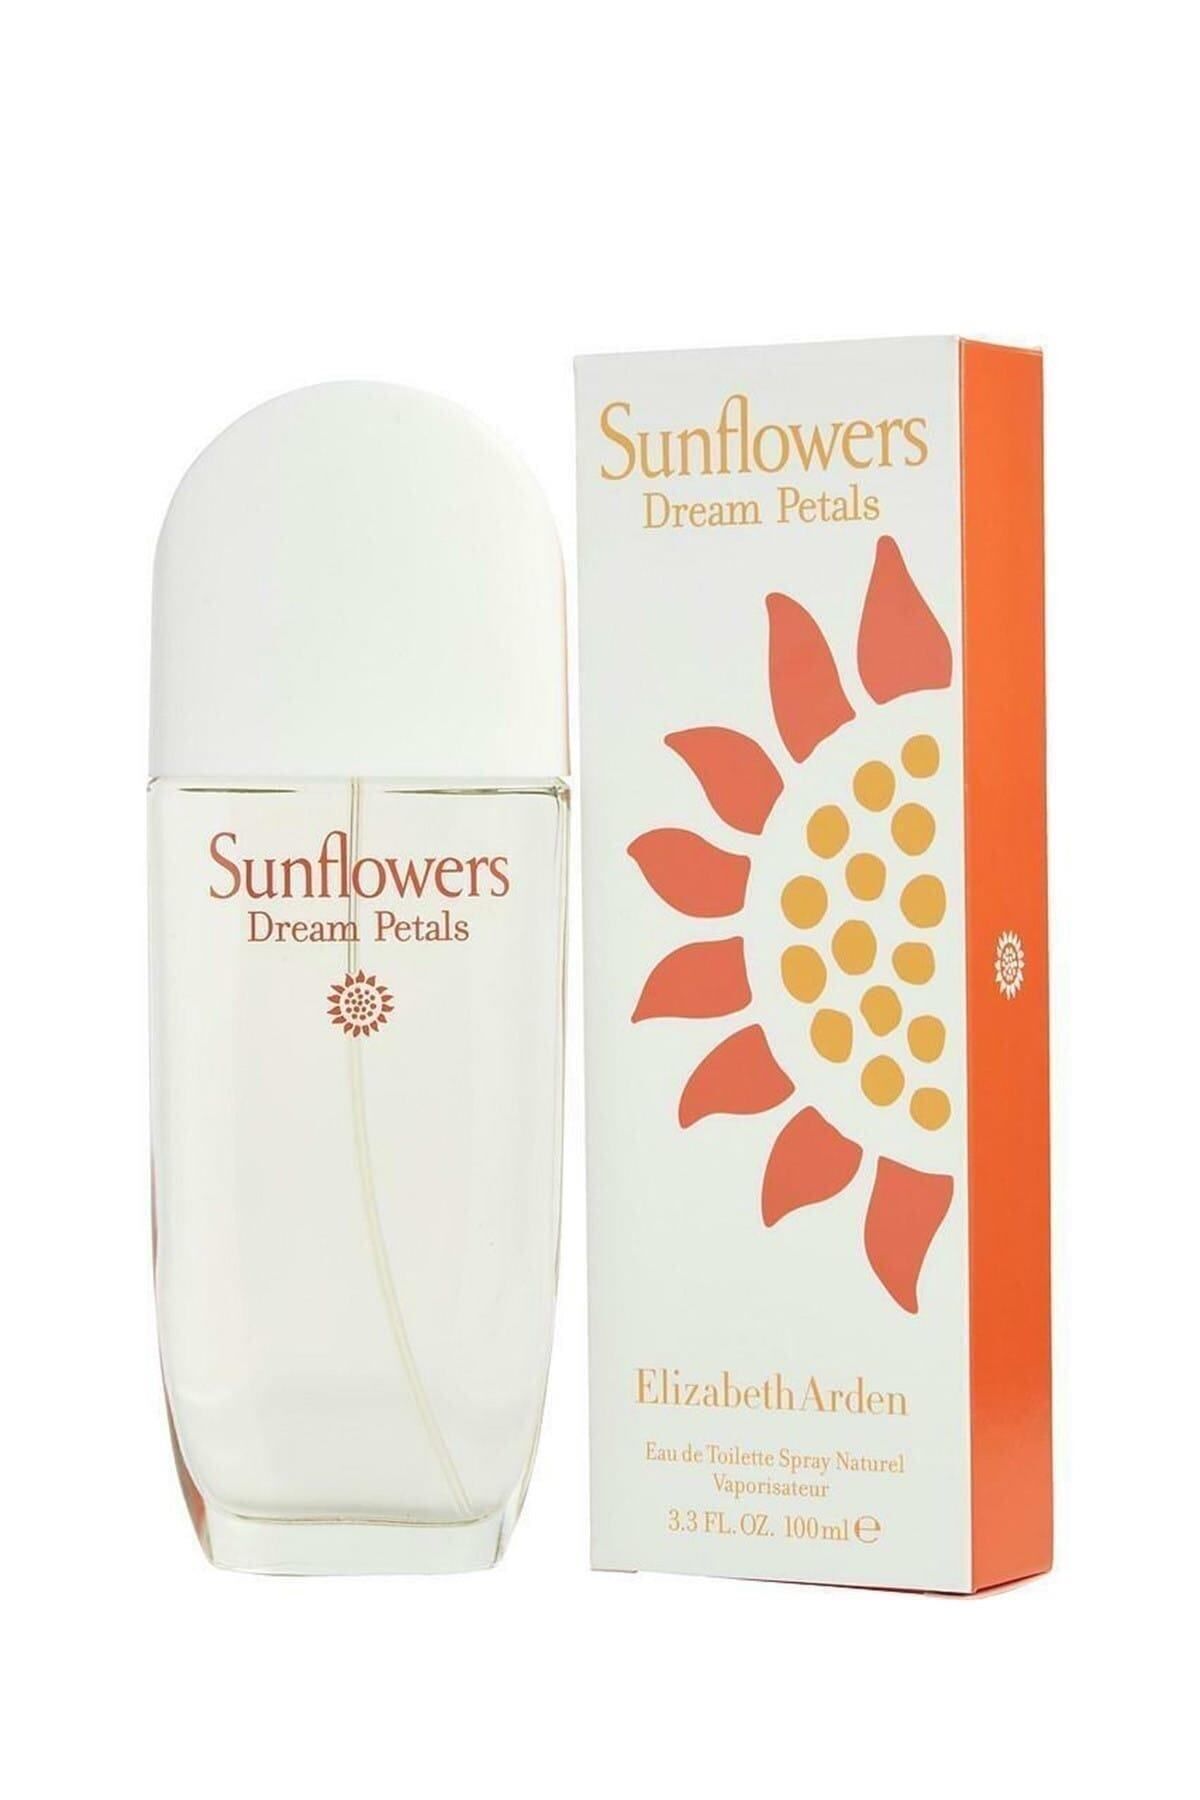 Elizabeth Arden Sunflowers Dream Petals ادوتویلت 100 ml